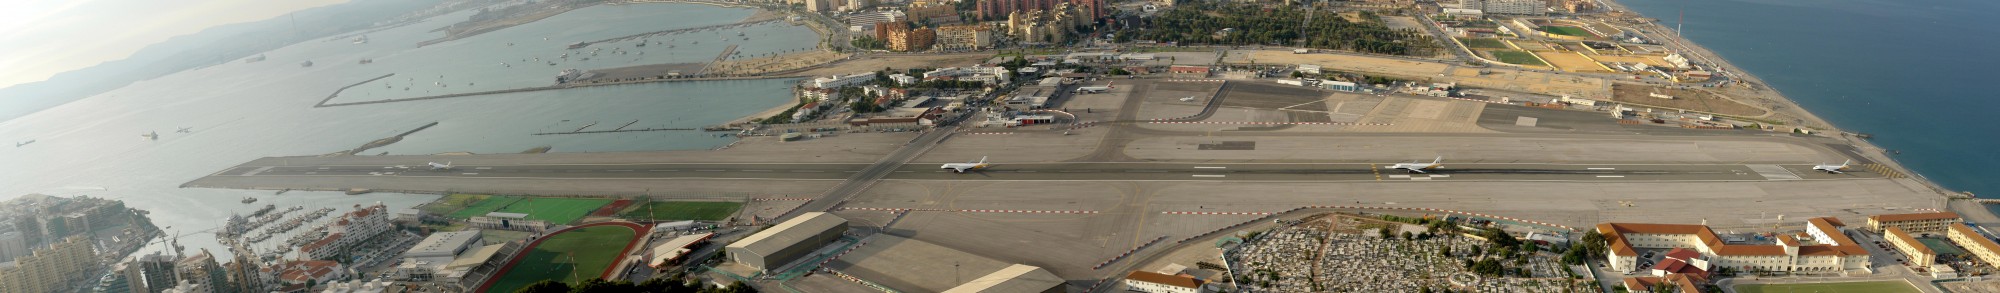 Gibraltar Airport panorama